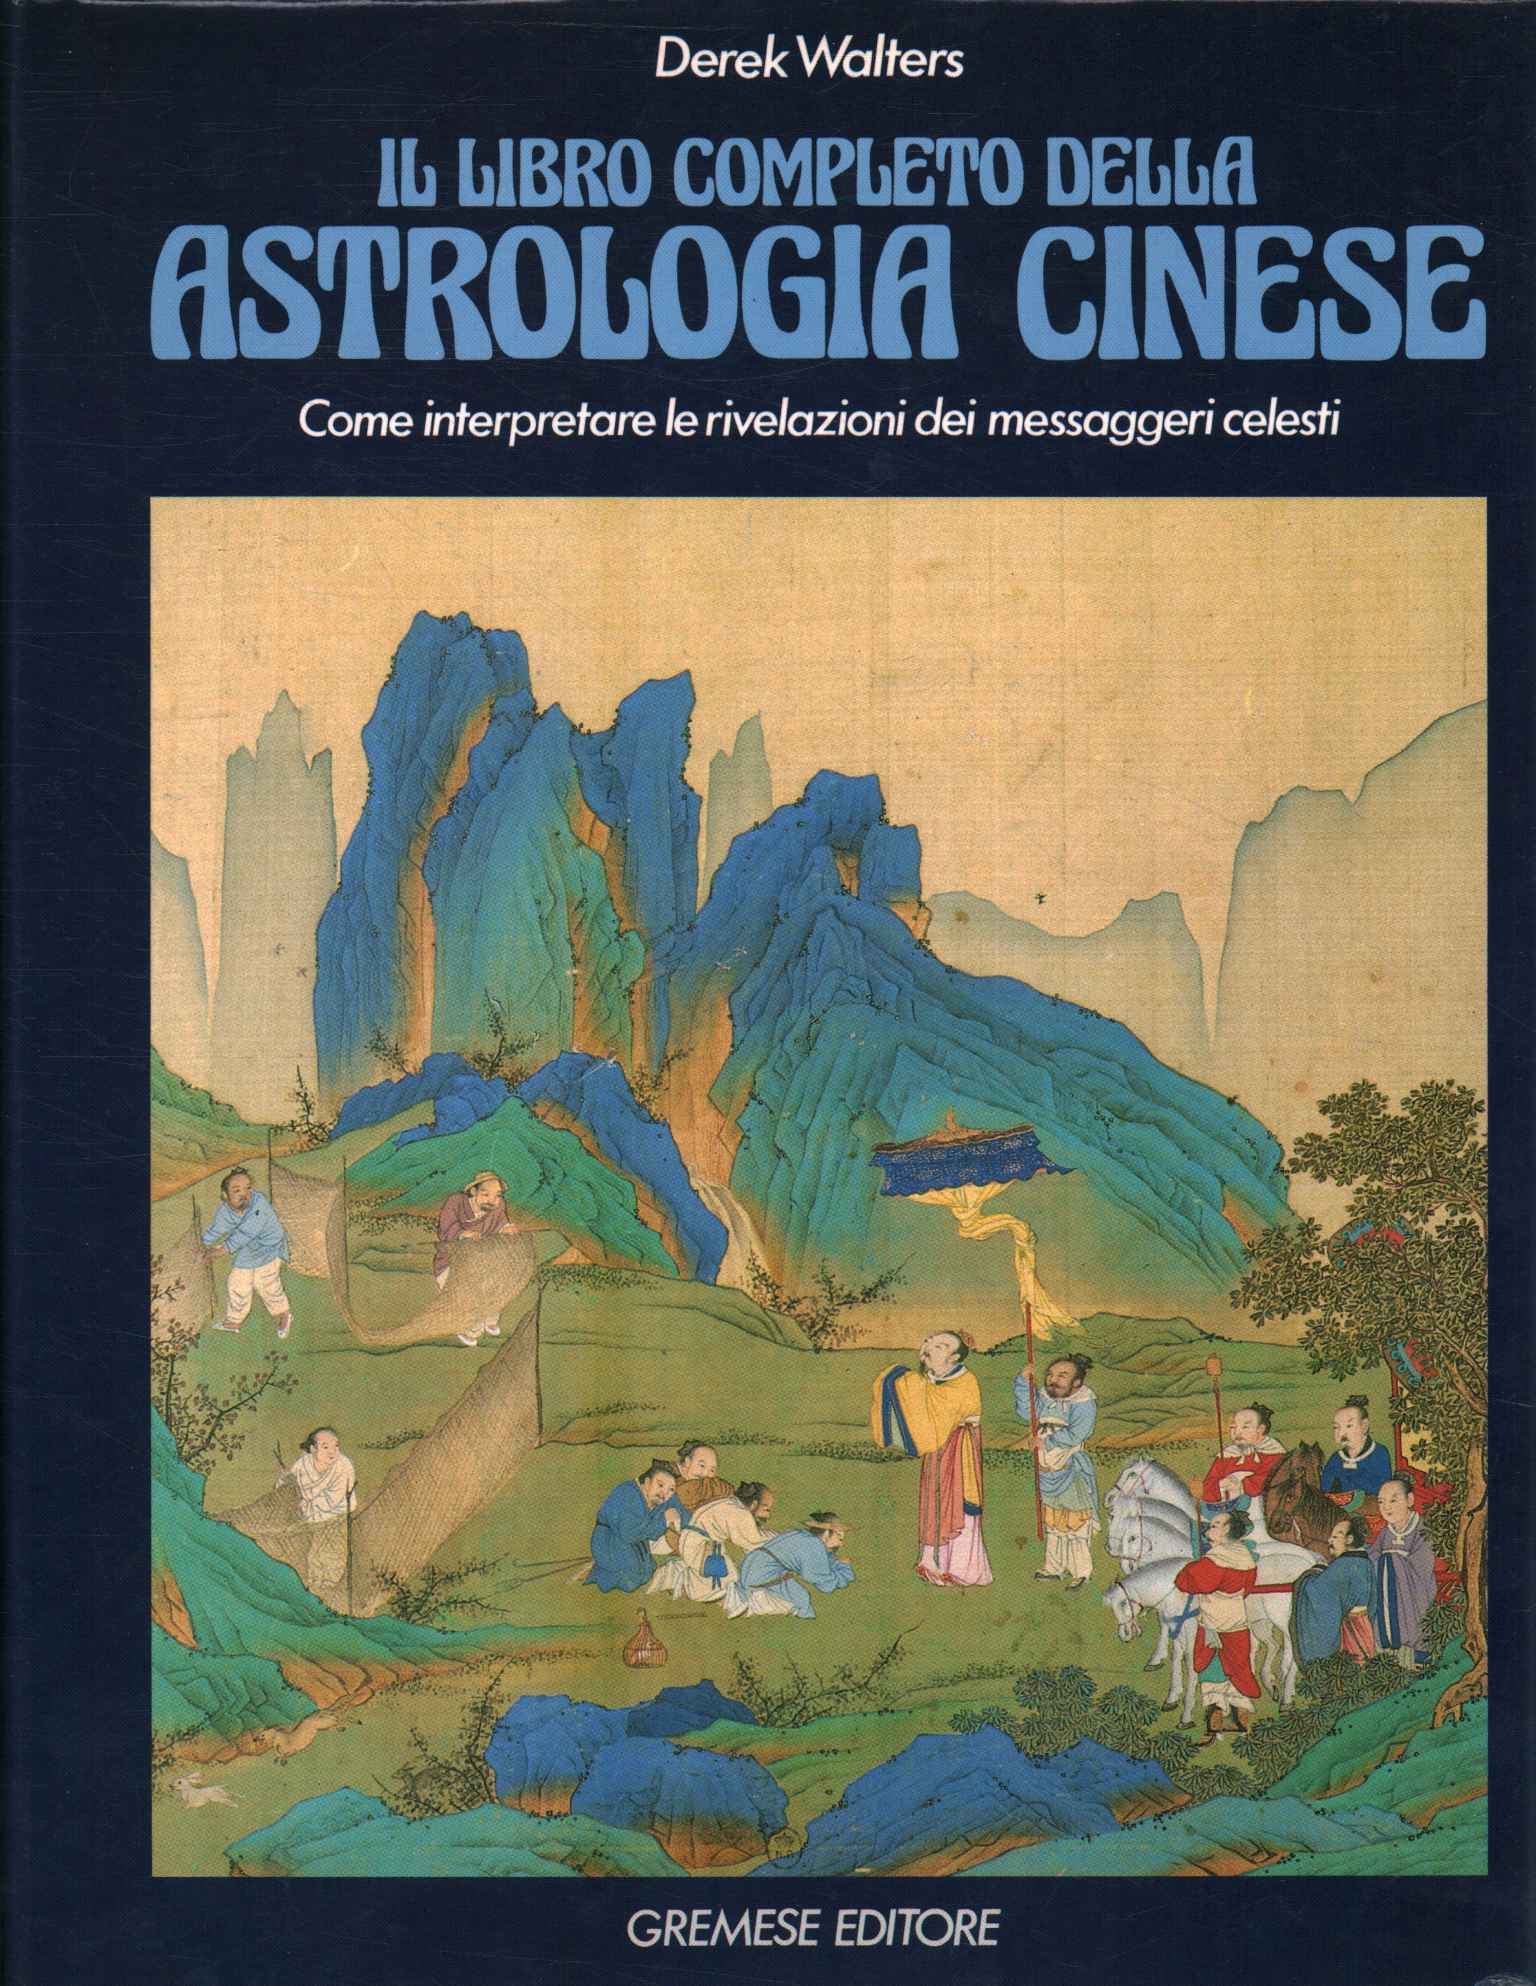 Das komplette Buch der chinesischen Astrologie